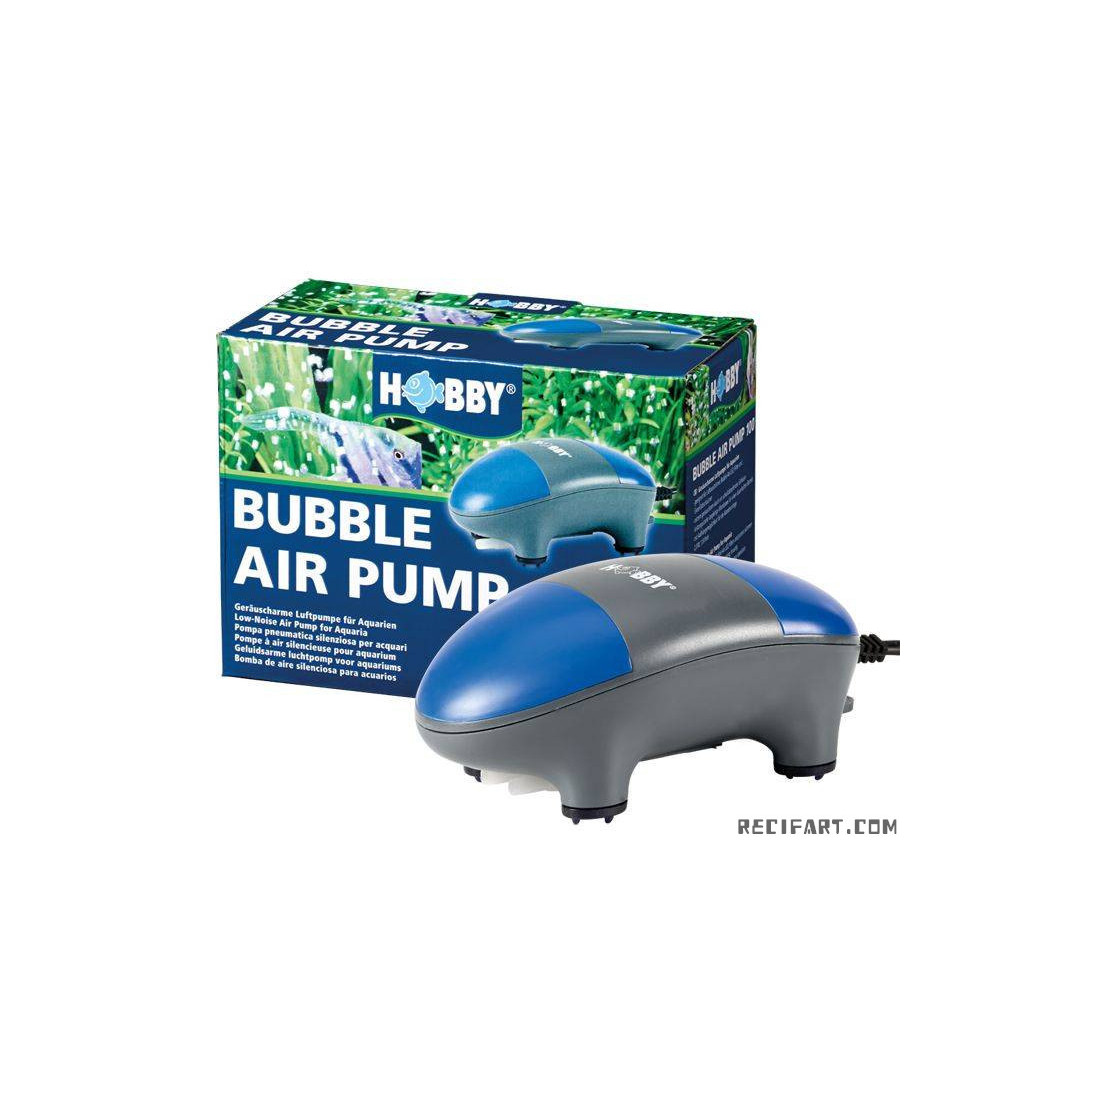 HOBBY Bubble Air Pump 400